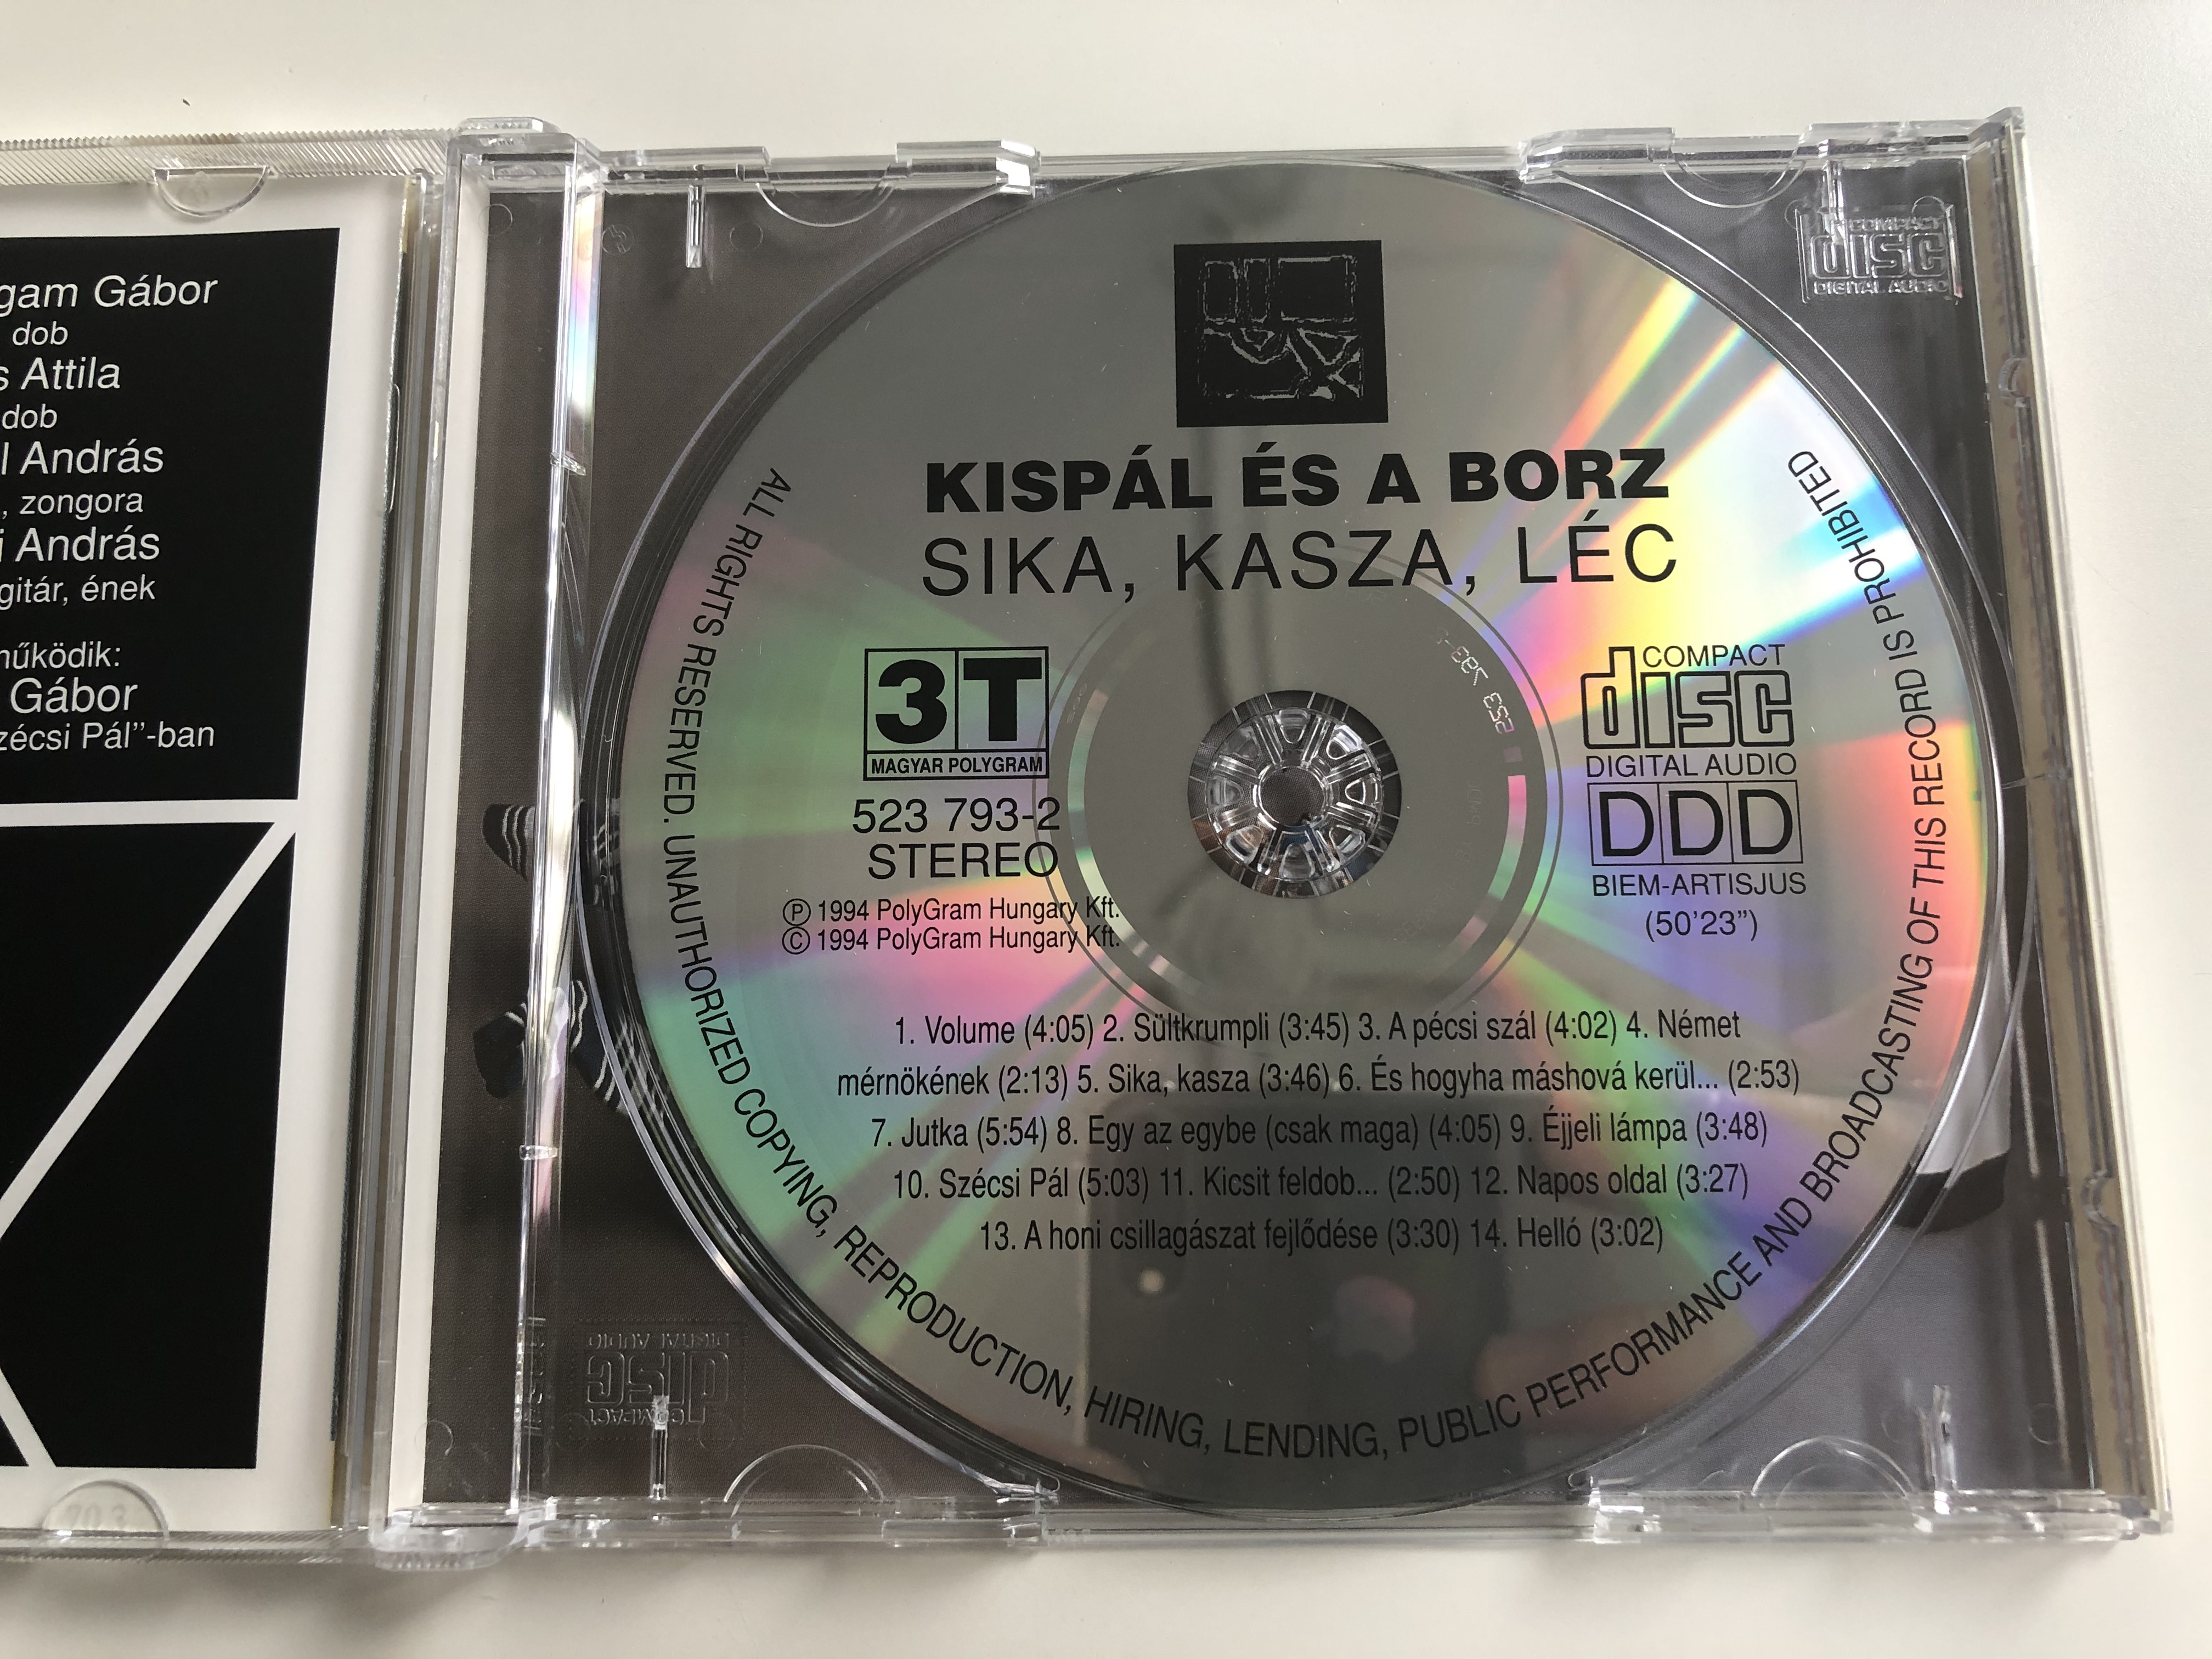 kisp-l-s-a-borz-sika-kasza-l-c-3t-audio-cd-1994-stereo-523-793-2-6-.jpg